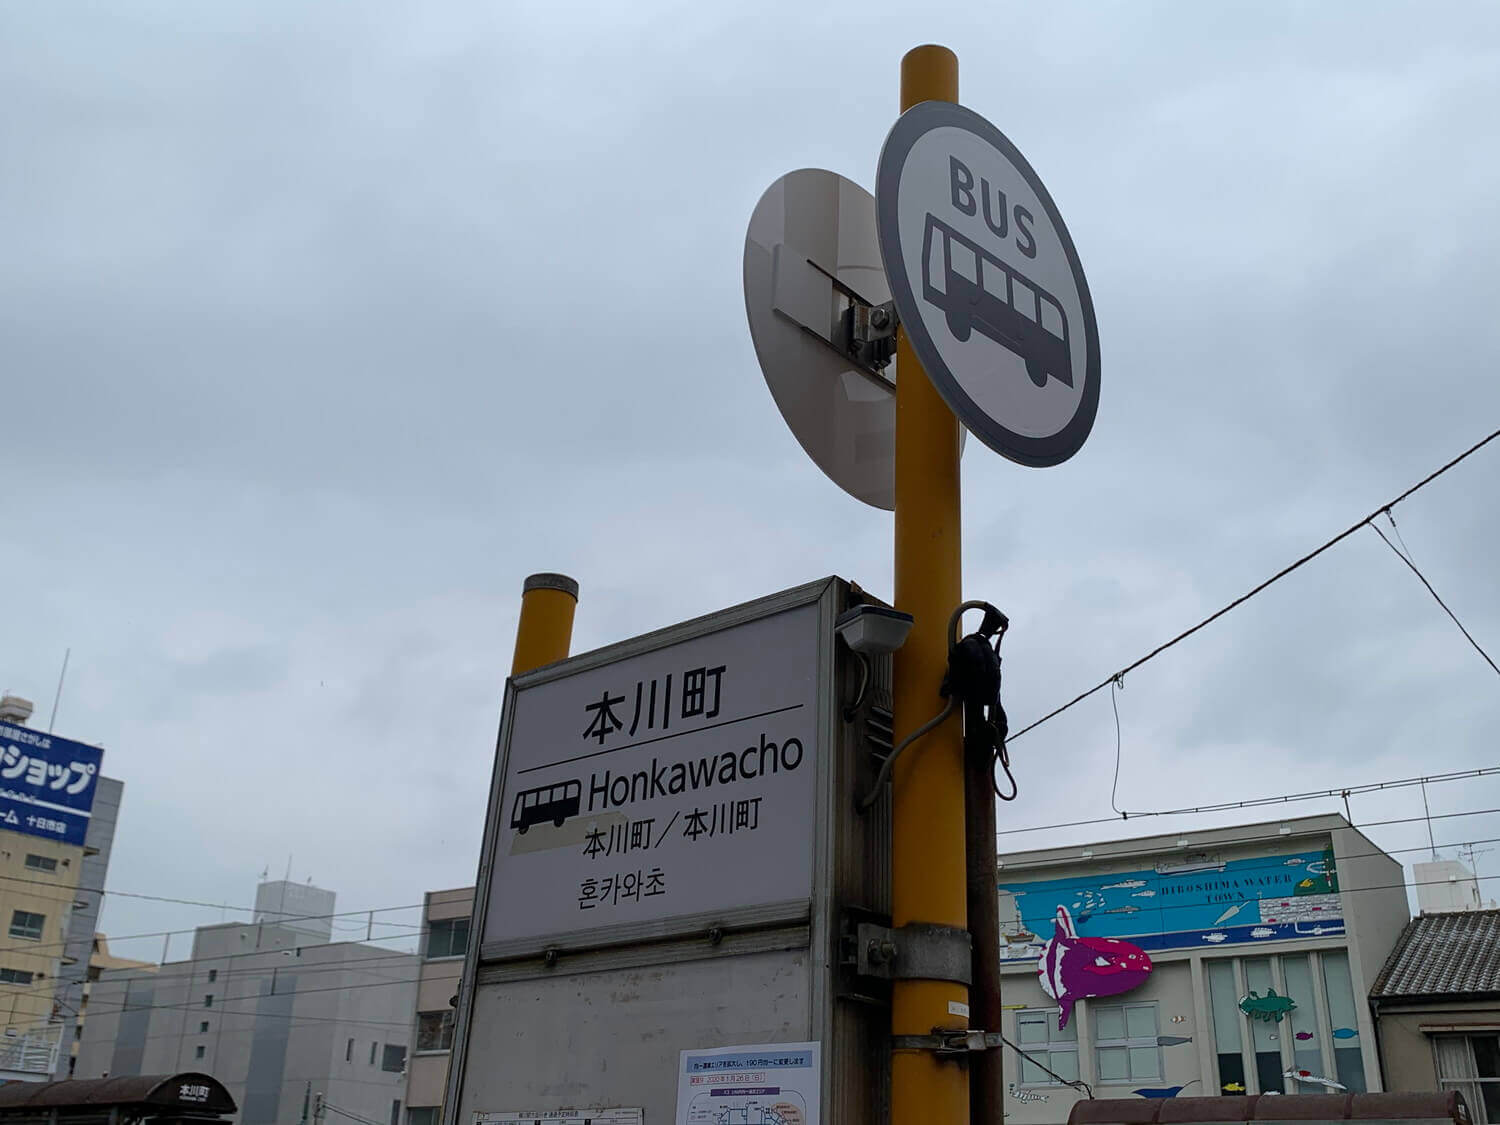 Signboard of Honkawacho bus stop